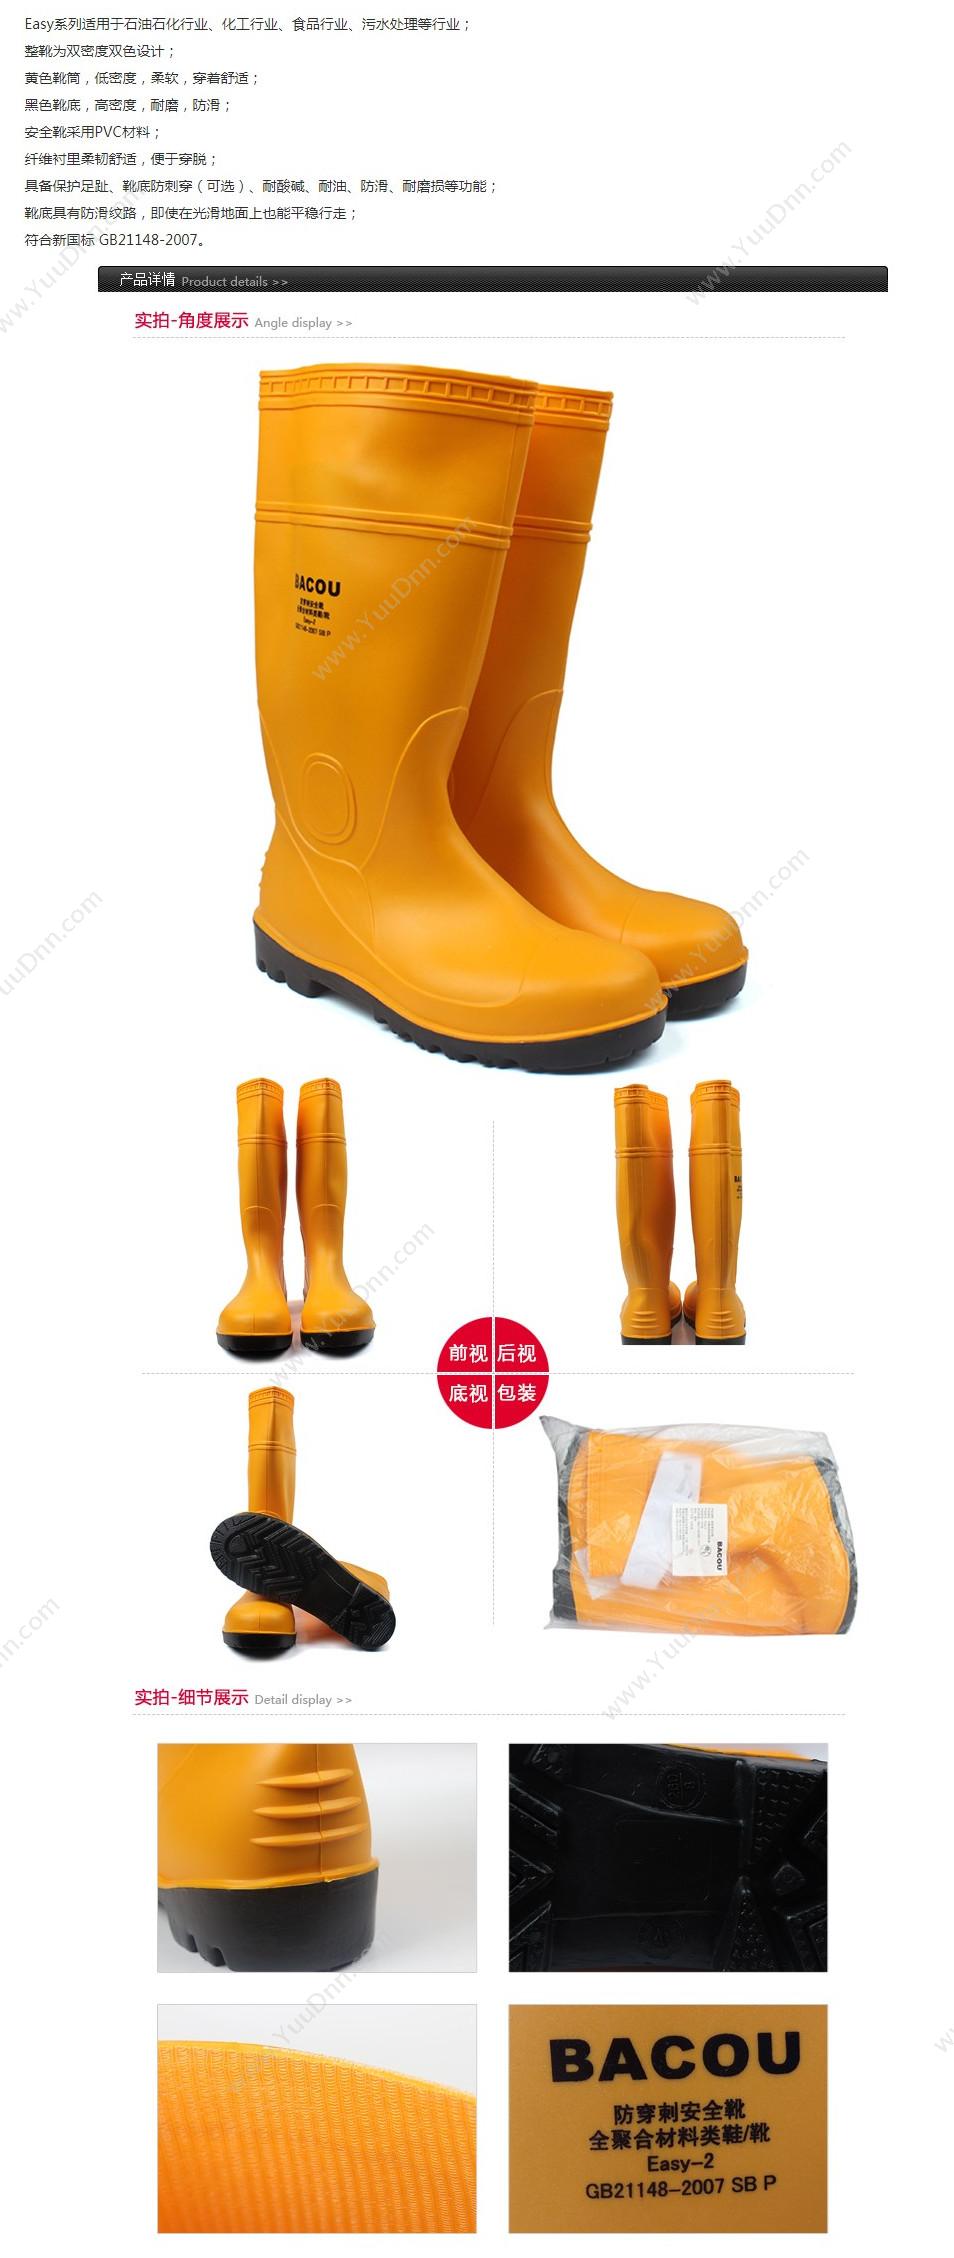 霍尼韦尔 Honeywell 75707 PVC 安全靴Easy 轻型 40 橘黄色 10双/箱 轻便鞋安全靴